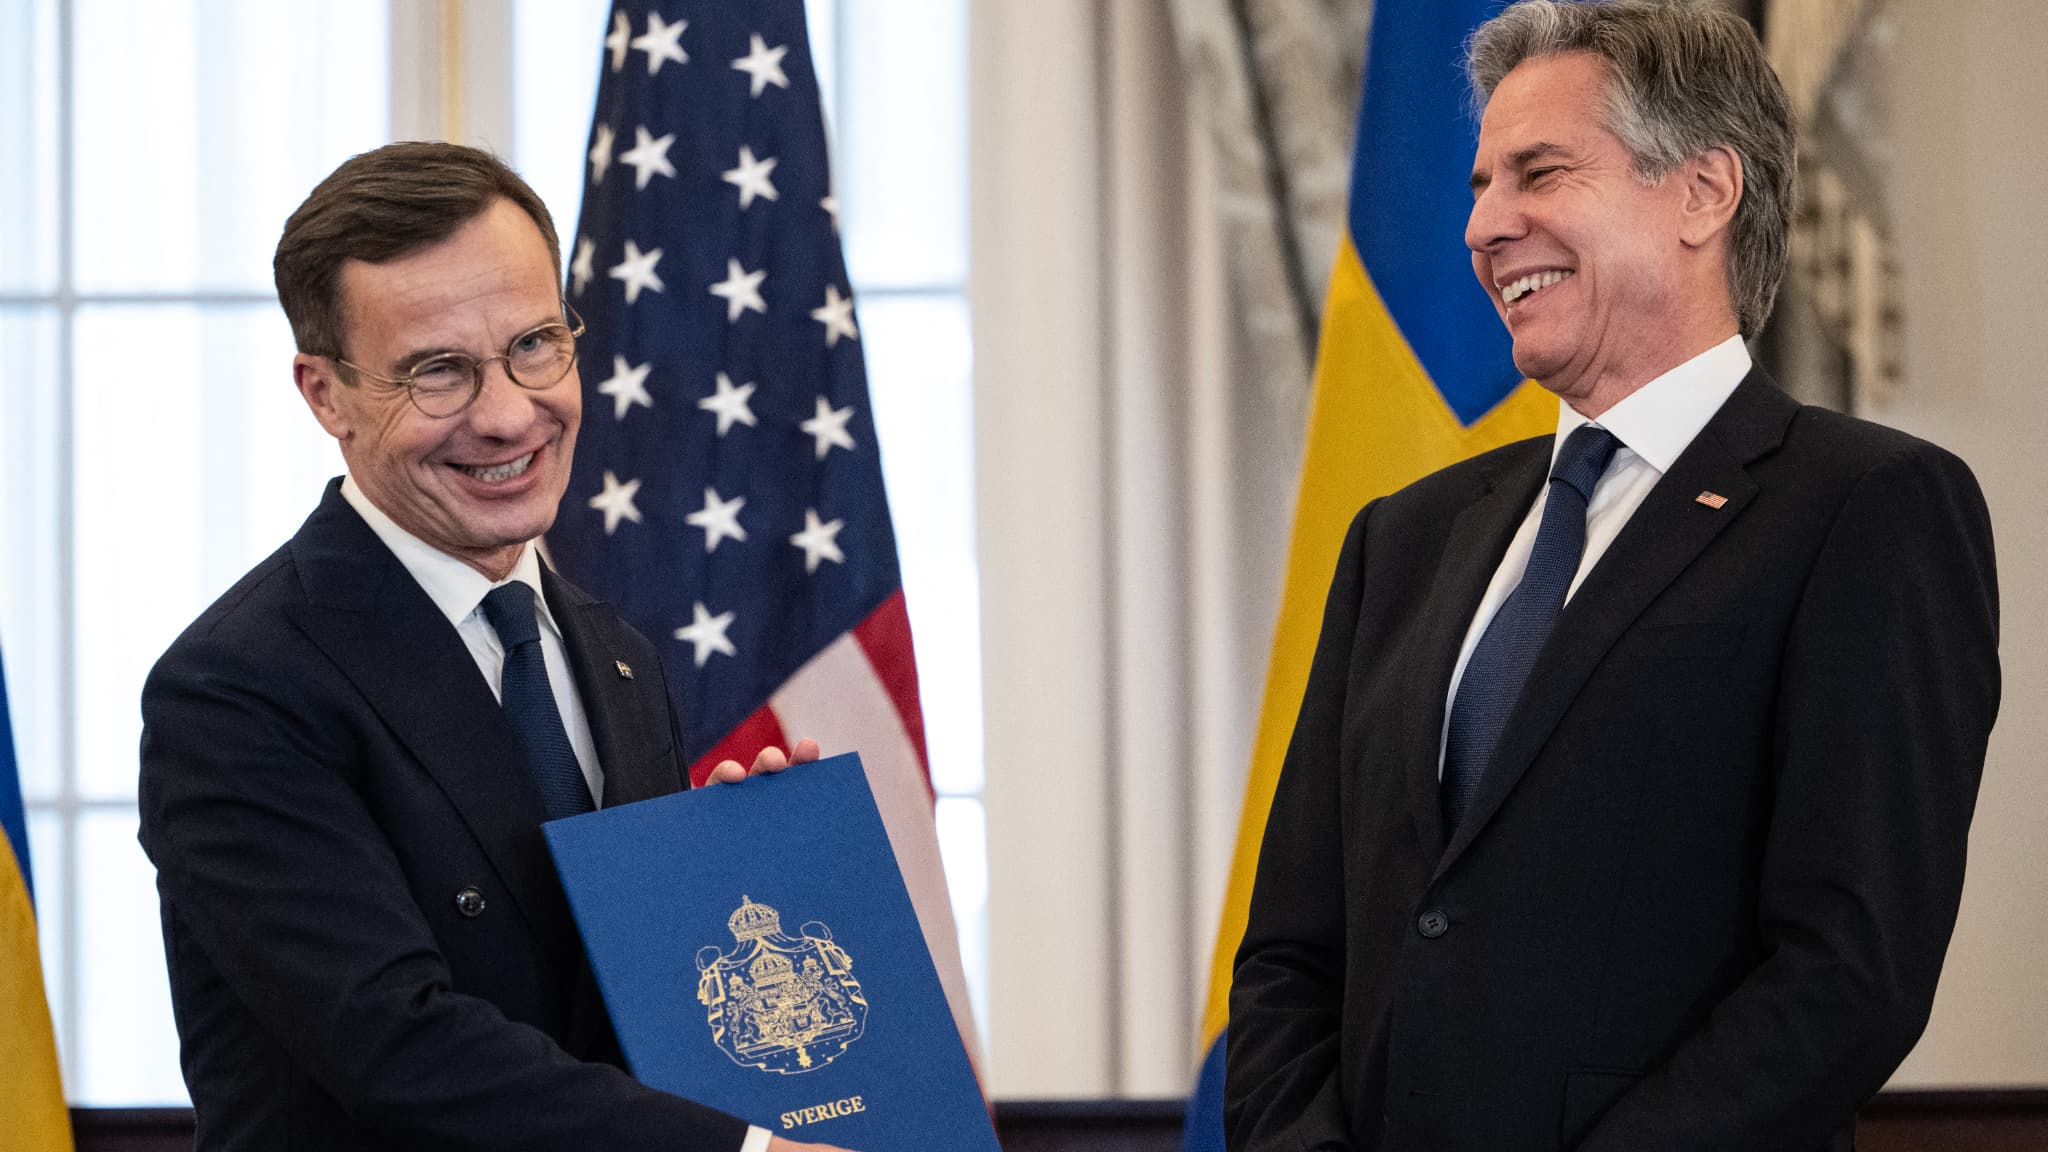 La Svezia diventa ufficialmente il 32esimo membro della NATO e Biden accoglie con favore un’alleanza “più forte che mai”